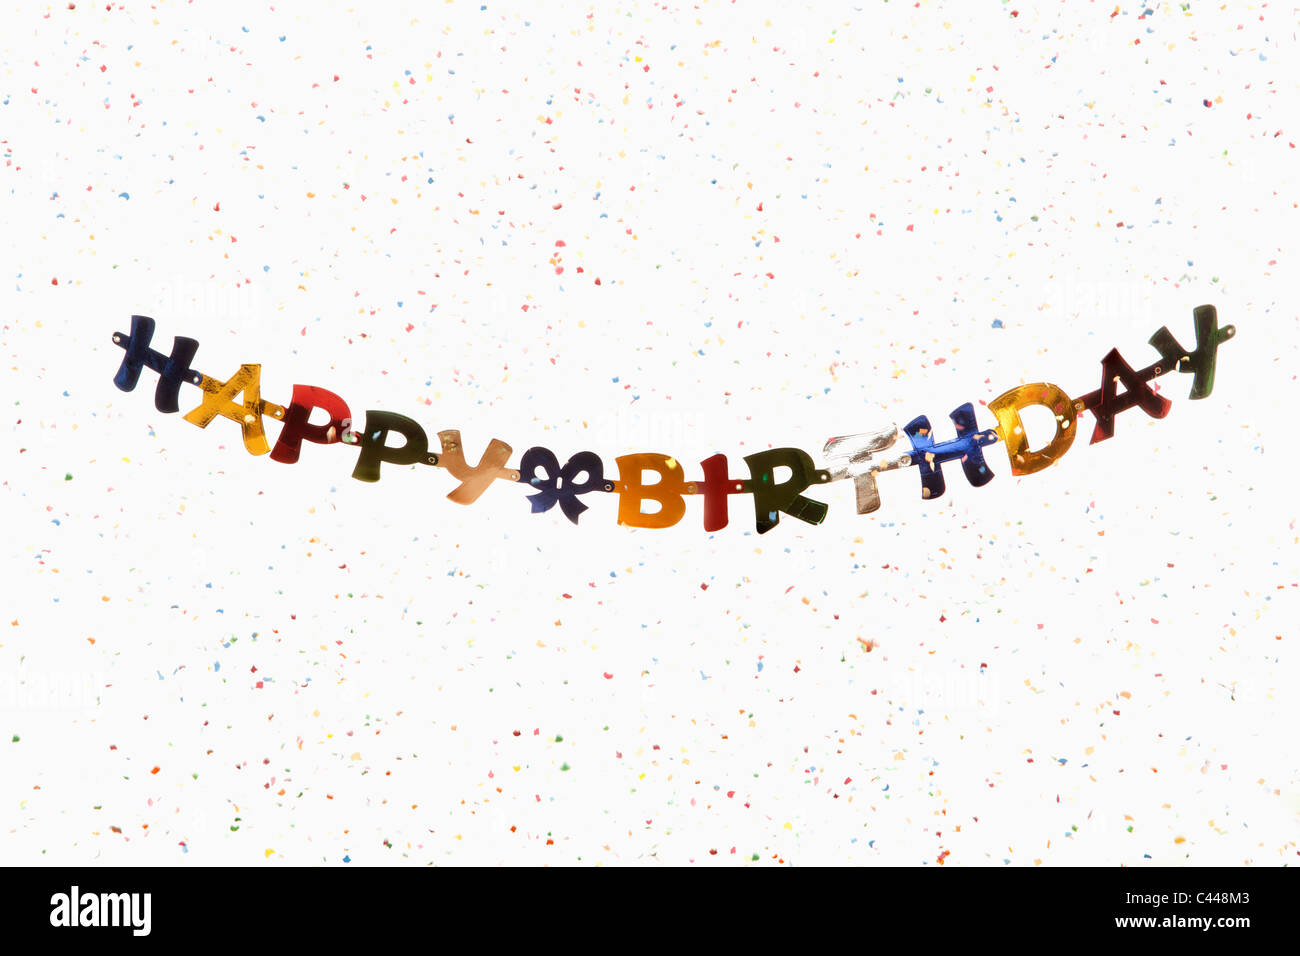 Happy birthday fotografías e imágenes de alta resolución - Página 5 - Alamy